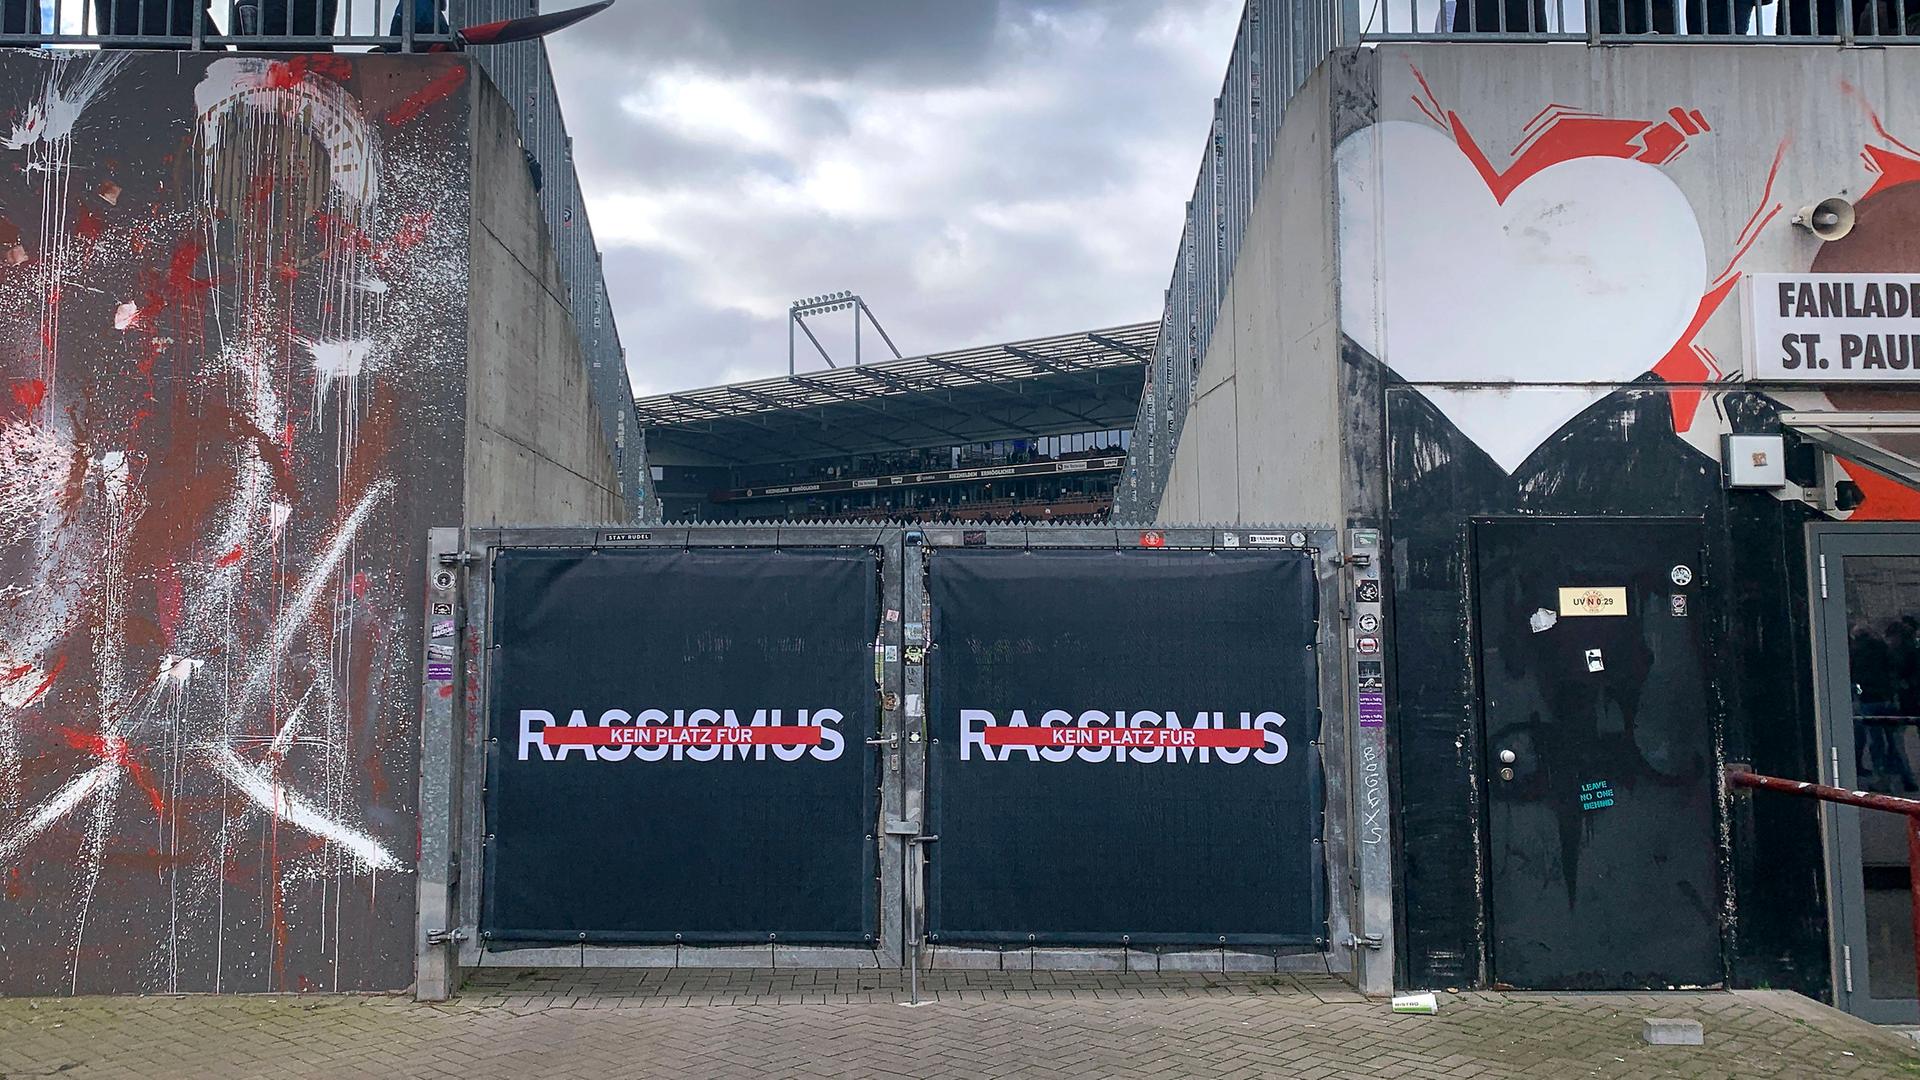 Das Wort "Rassismus" steht durchgestrichen am Stadion des FC St. Pauli.